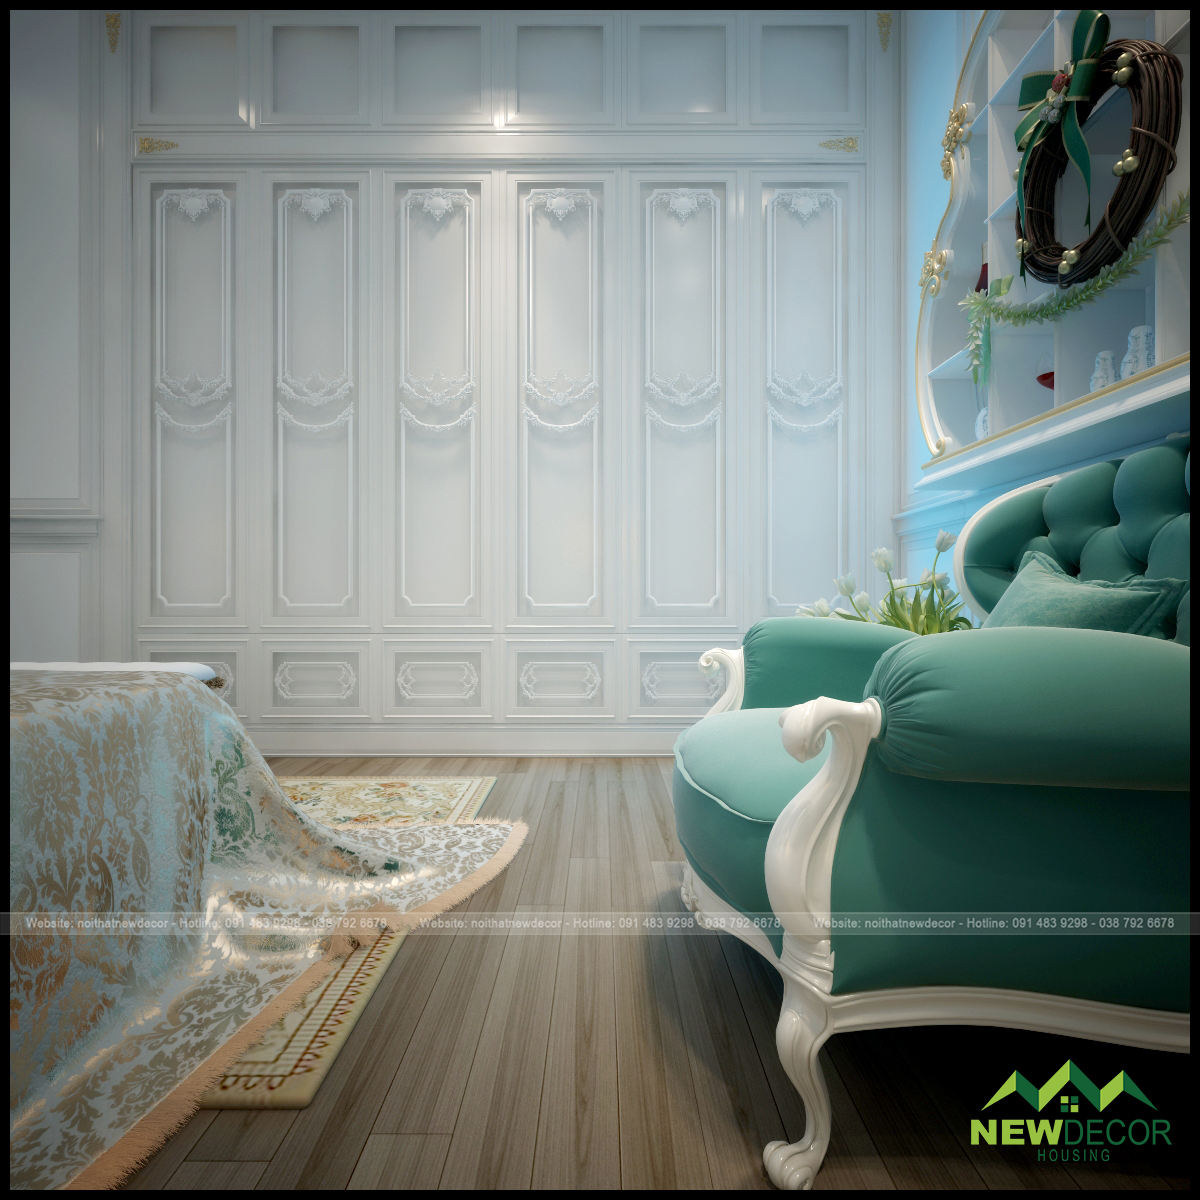 Bức tường trong phòng ngủ cũng được xây dựng thiết kế cách điệu chắc chắn sẽ tạo nên phong cách cổ điển hoàn hảo nhất.